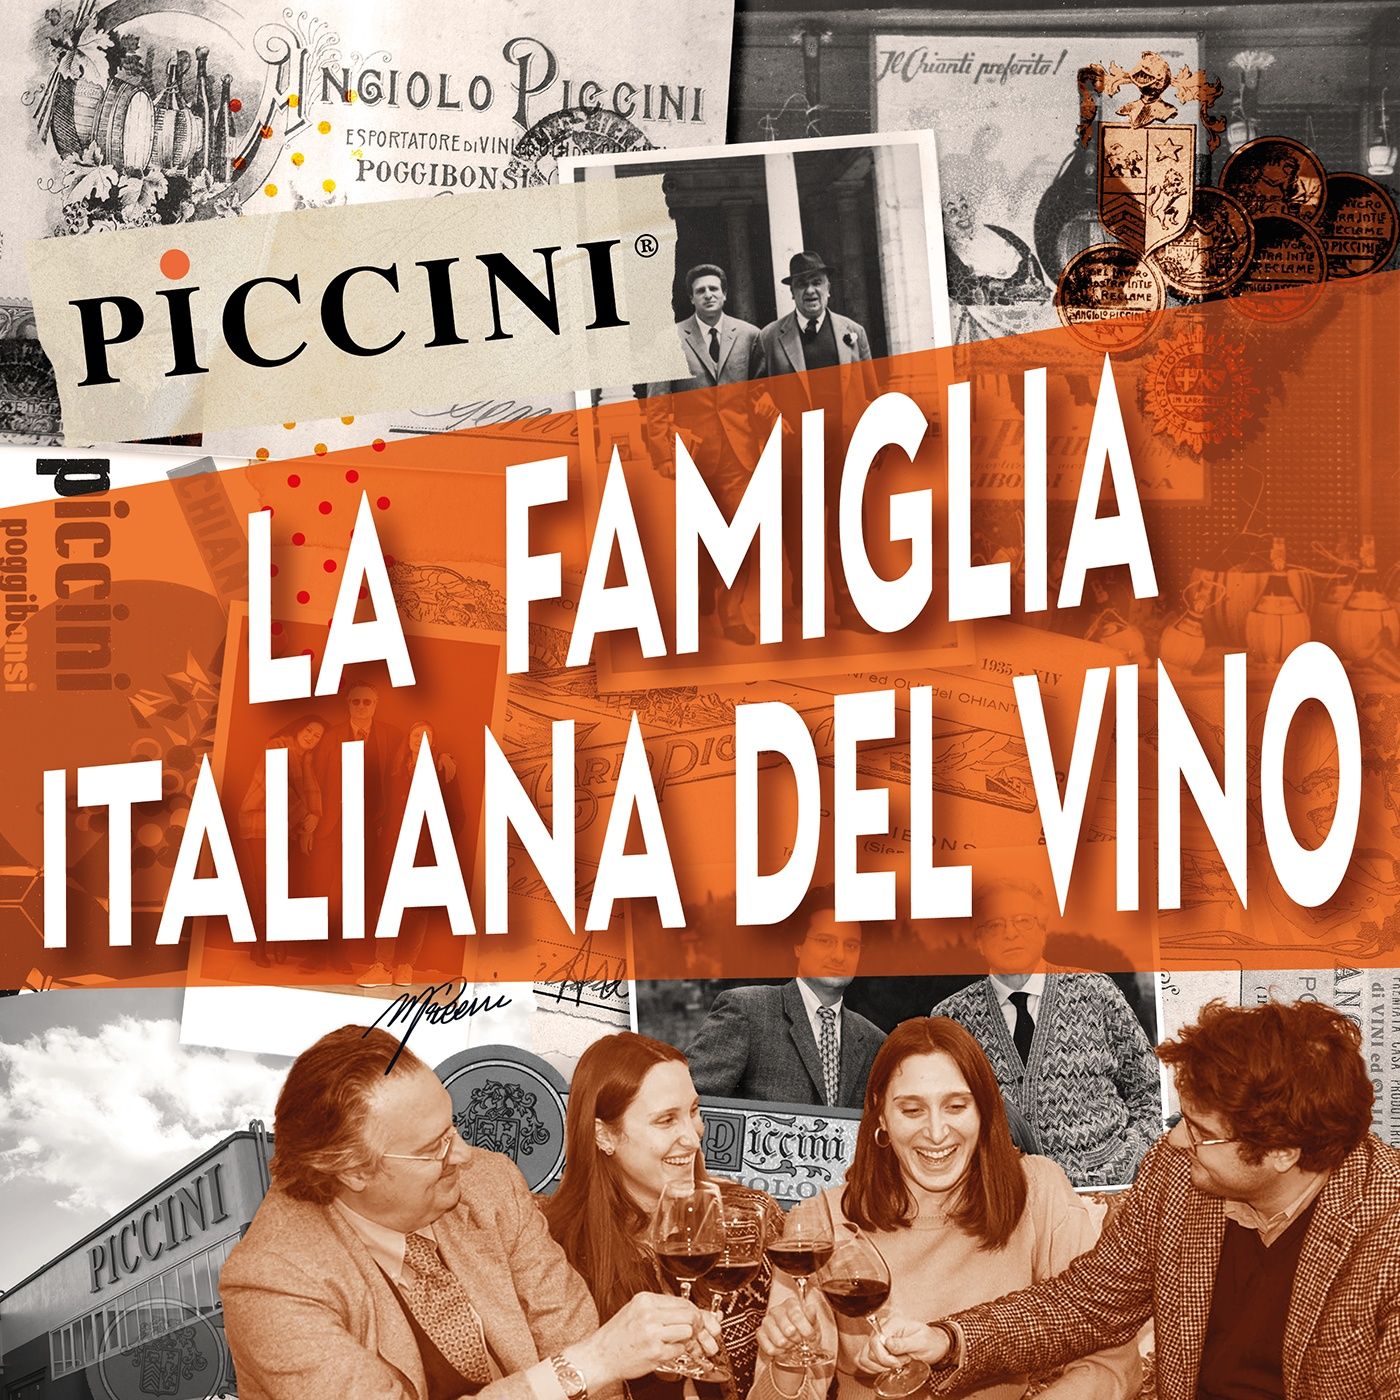 Dr Podcast - Piccini – La famiglia italiana del vino